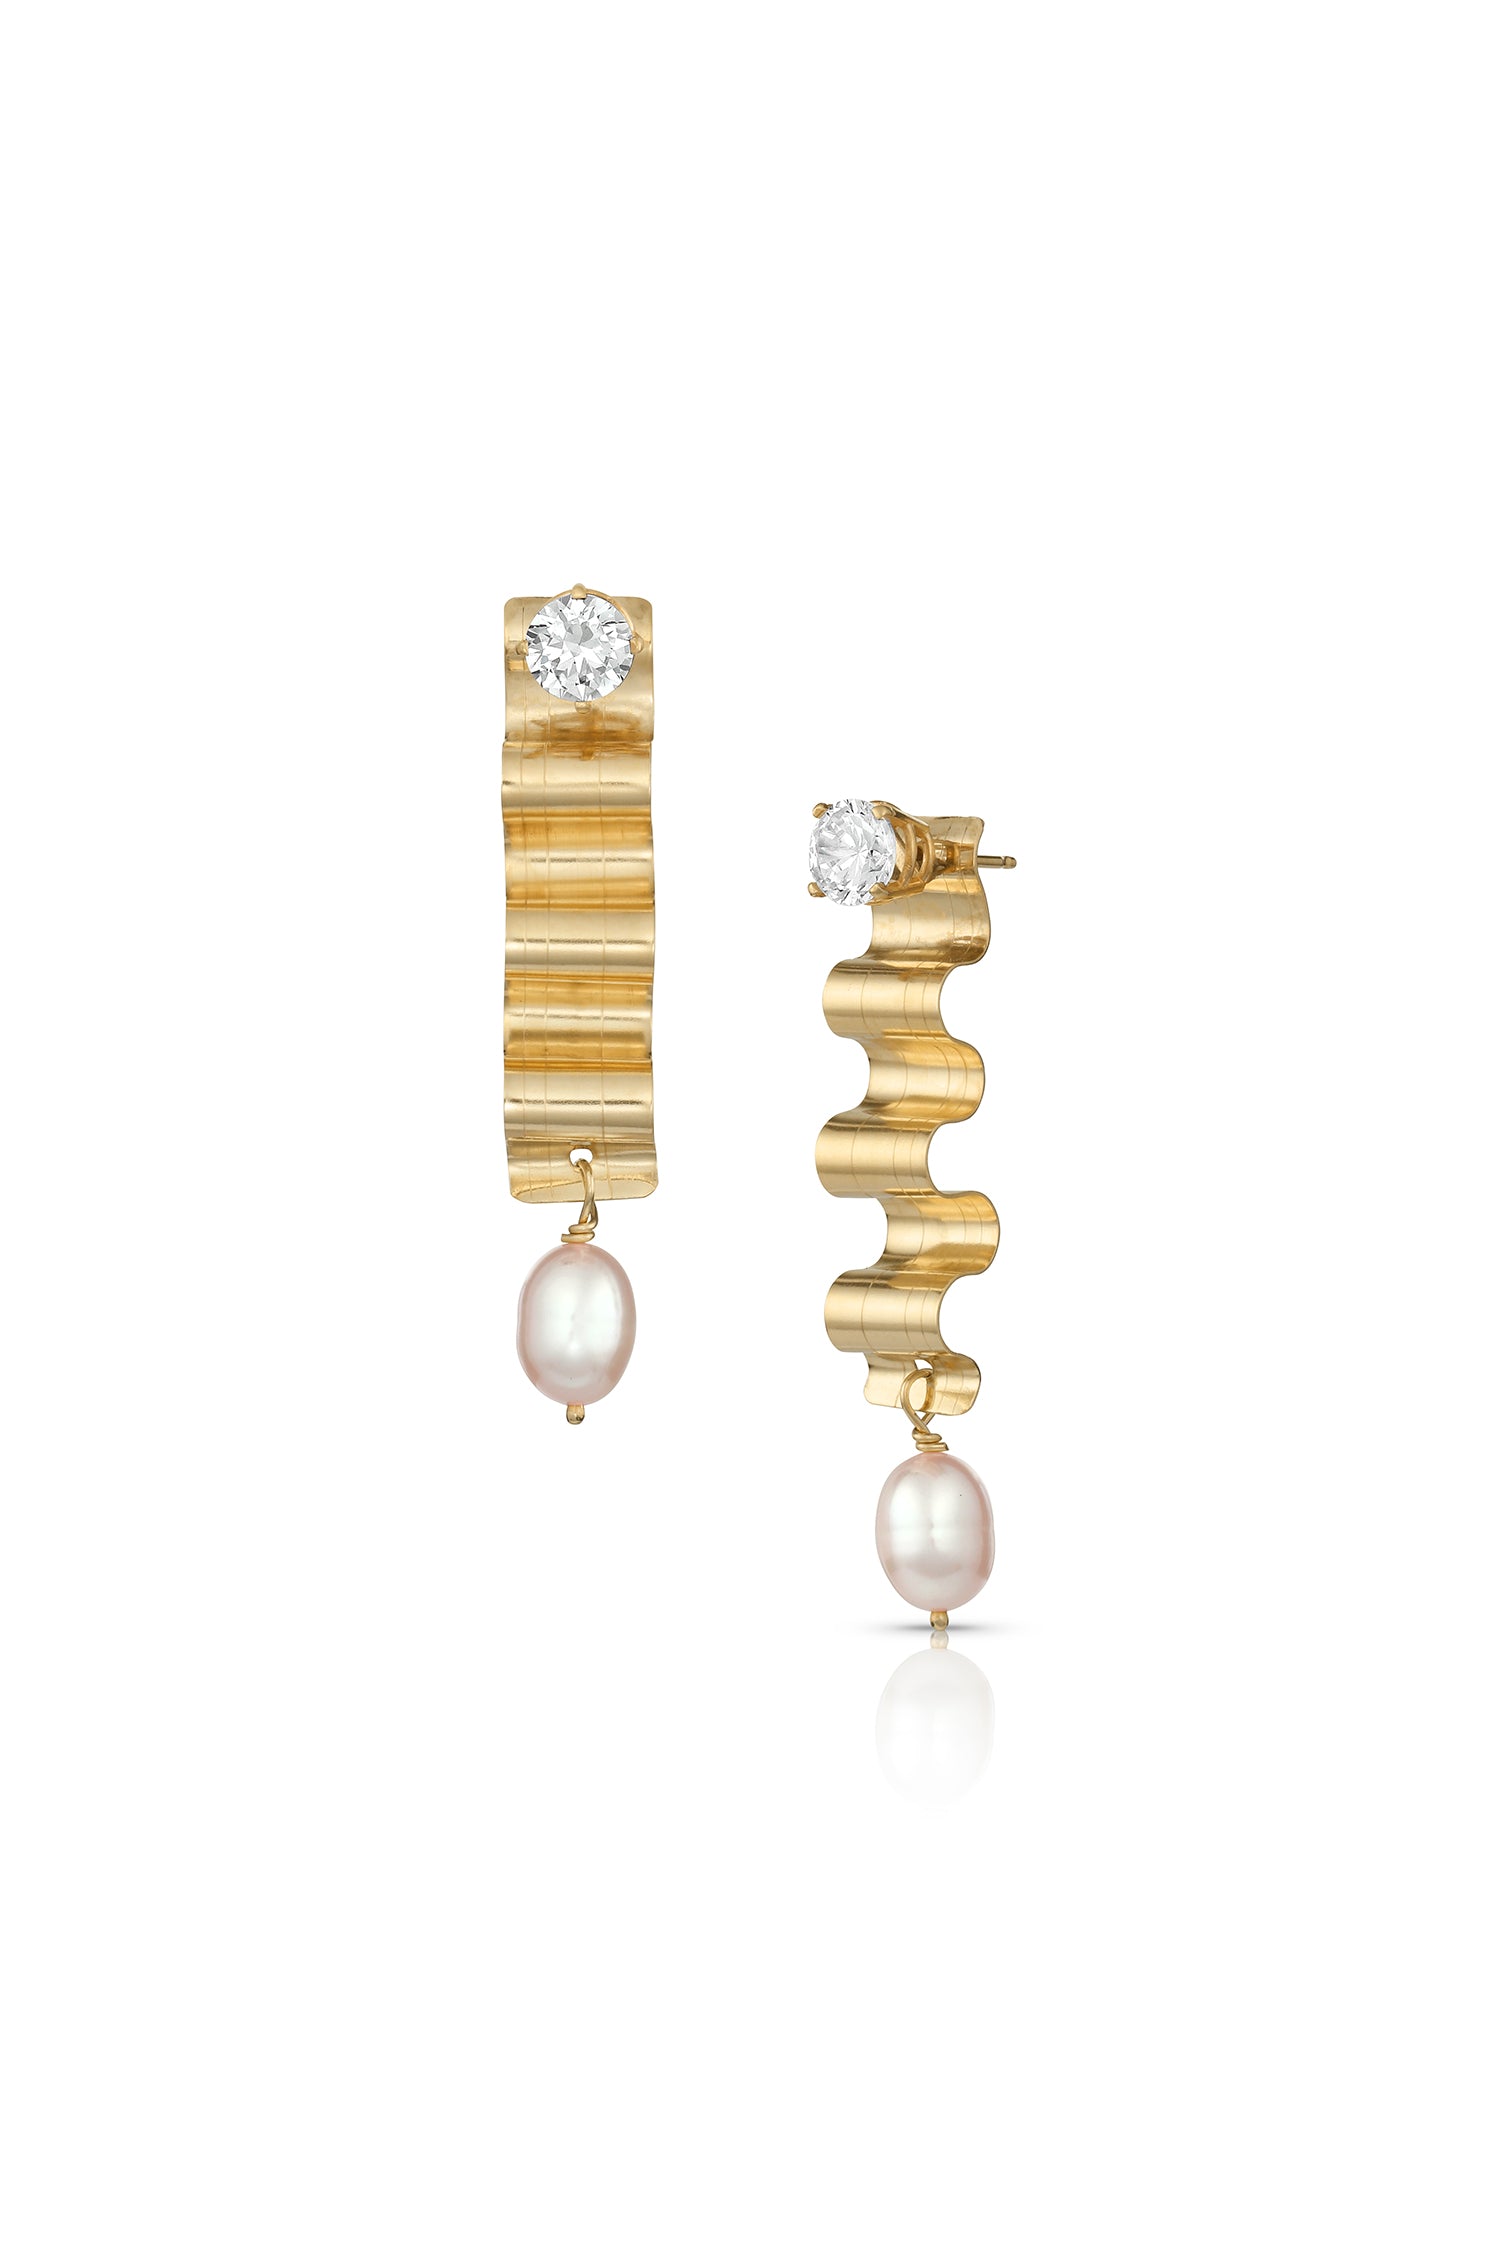 Award Winning "Zoom Worthy Earrings" 14K Gold & Pearls